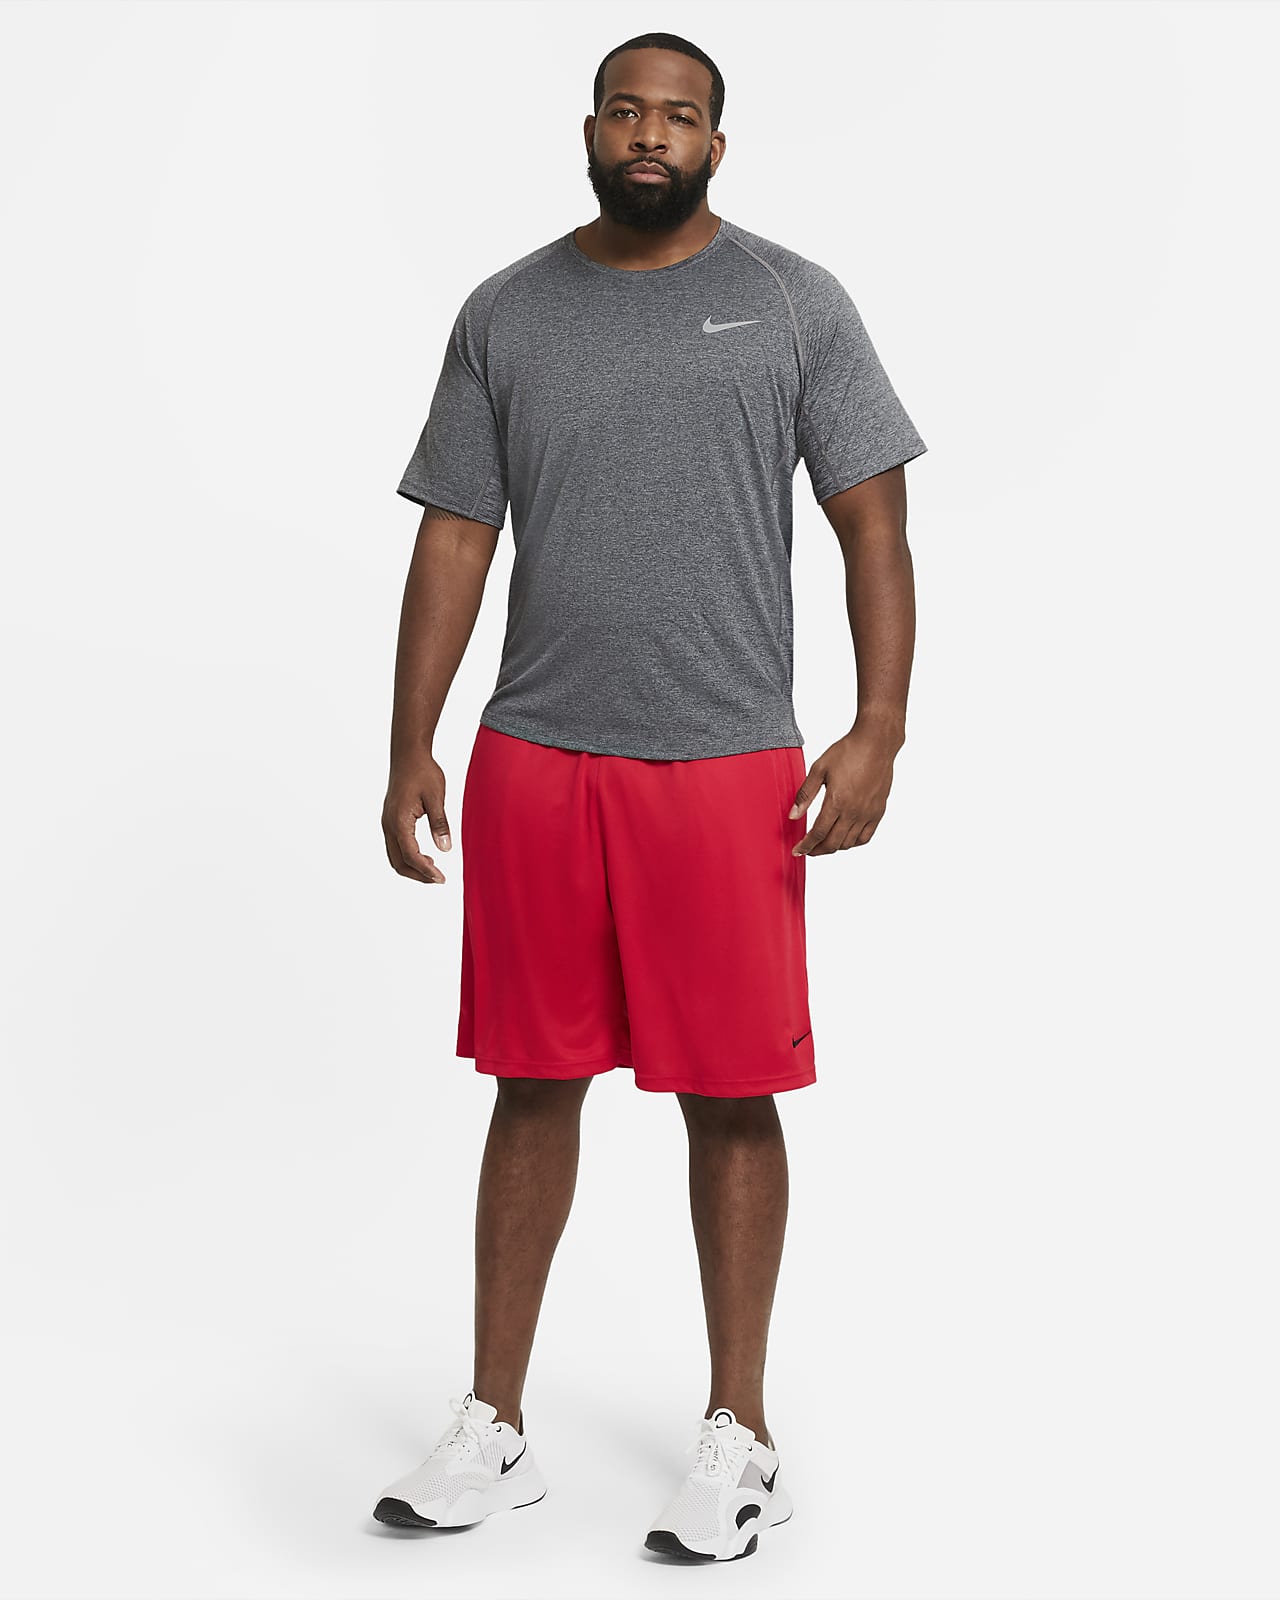 Por favor período Palabra Nike Dri-FIT Men's Training Shorts. Nike.com